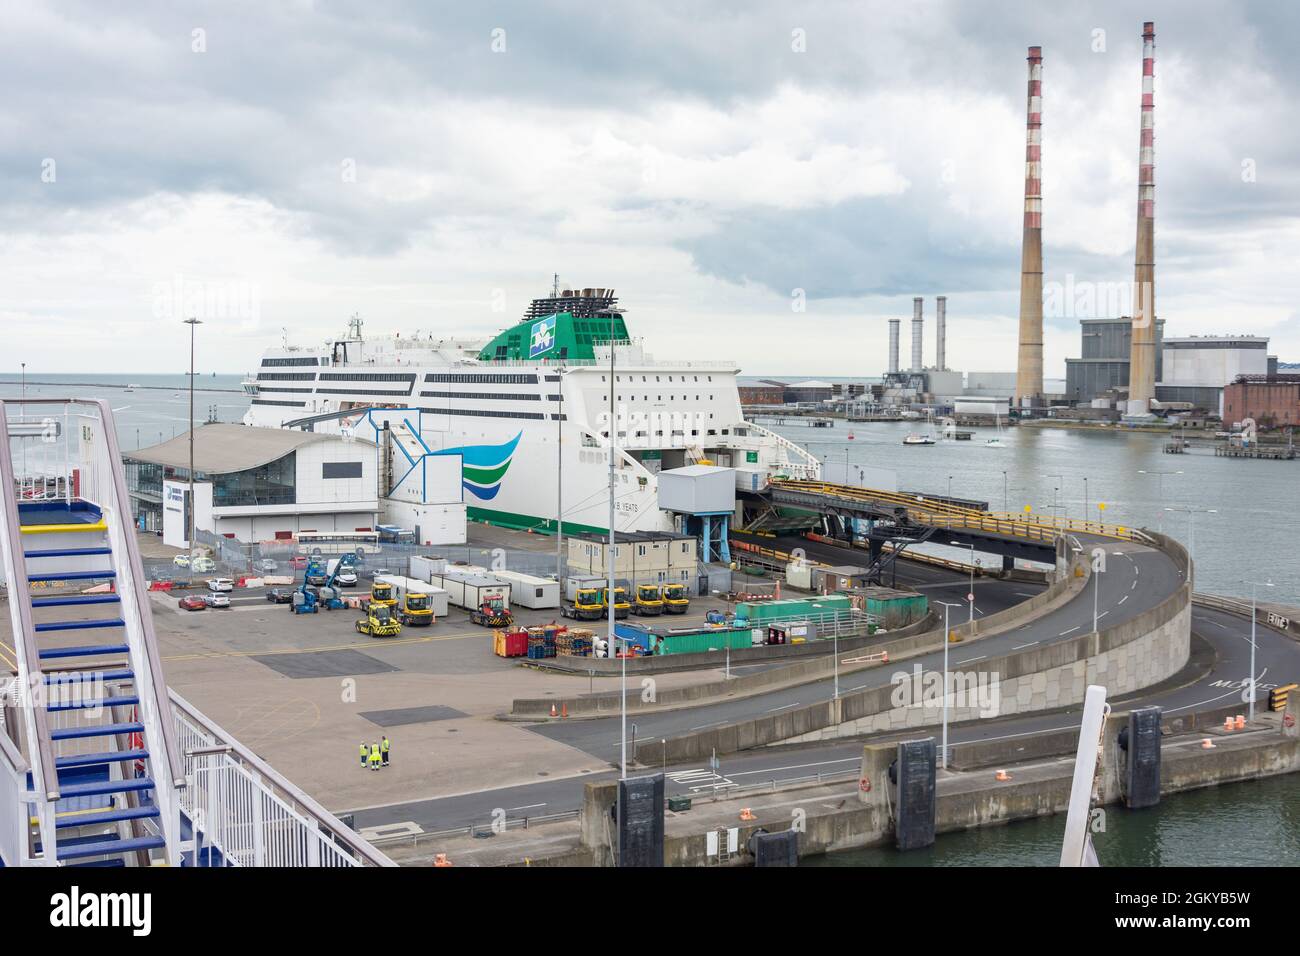 Irish Ferries W. B. Yeats Passenger Ferry, Dublin Port, Dublin, République d'Irlande Banque D'Images